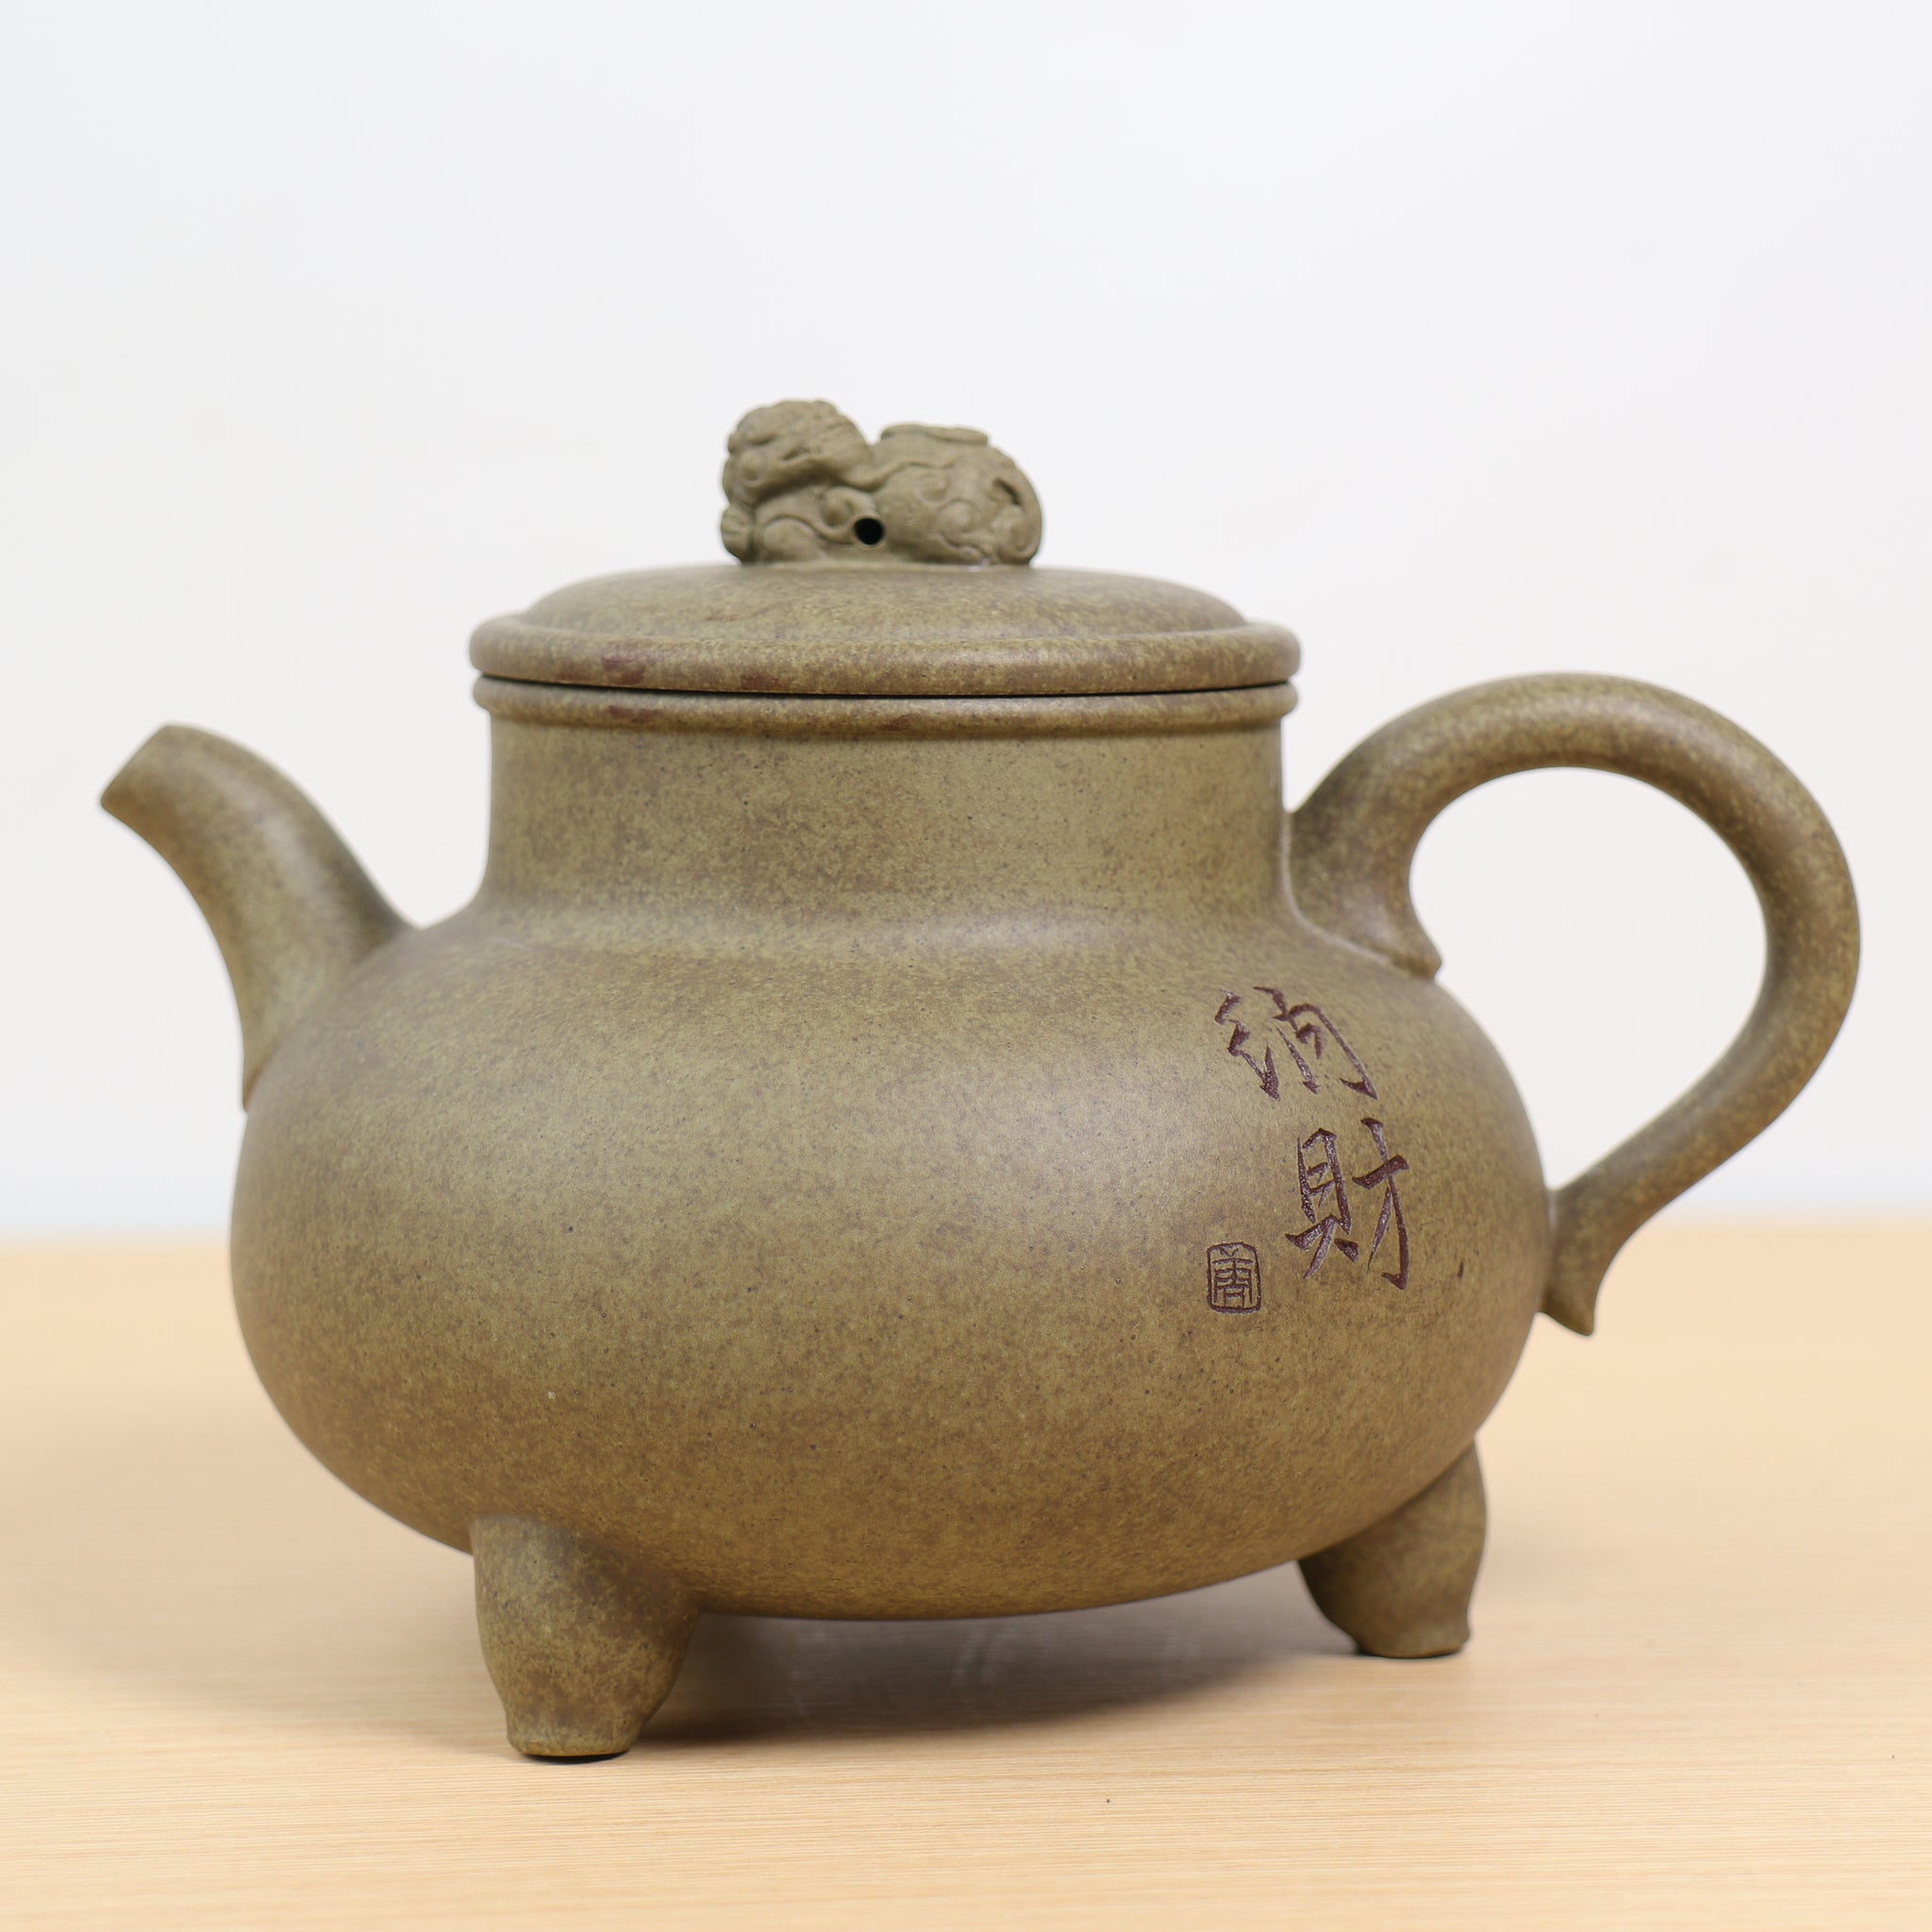 【納財】原礦龍貝青段泥紫砂茶壺